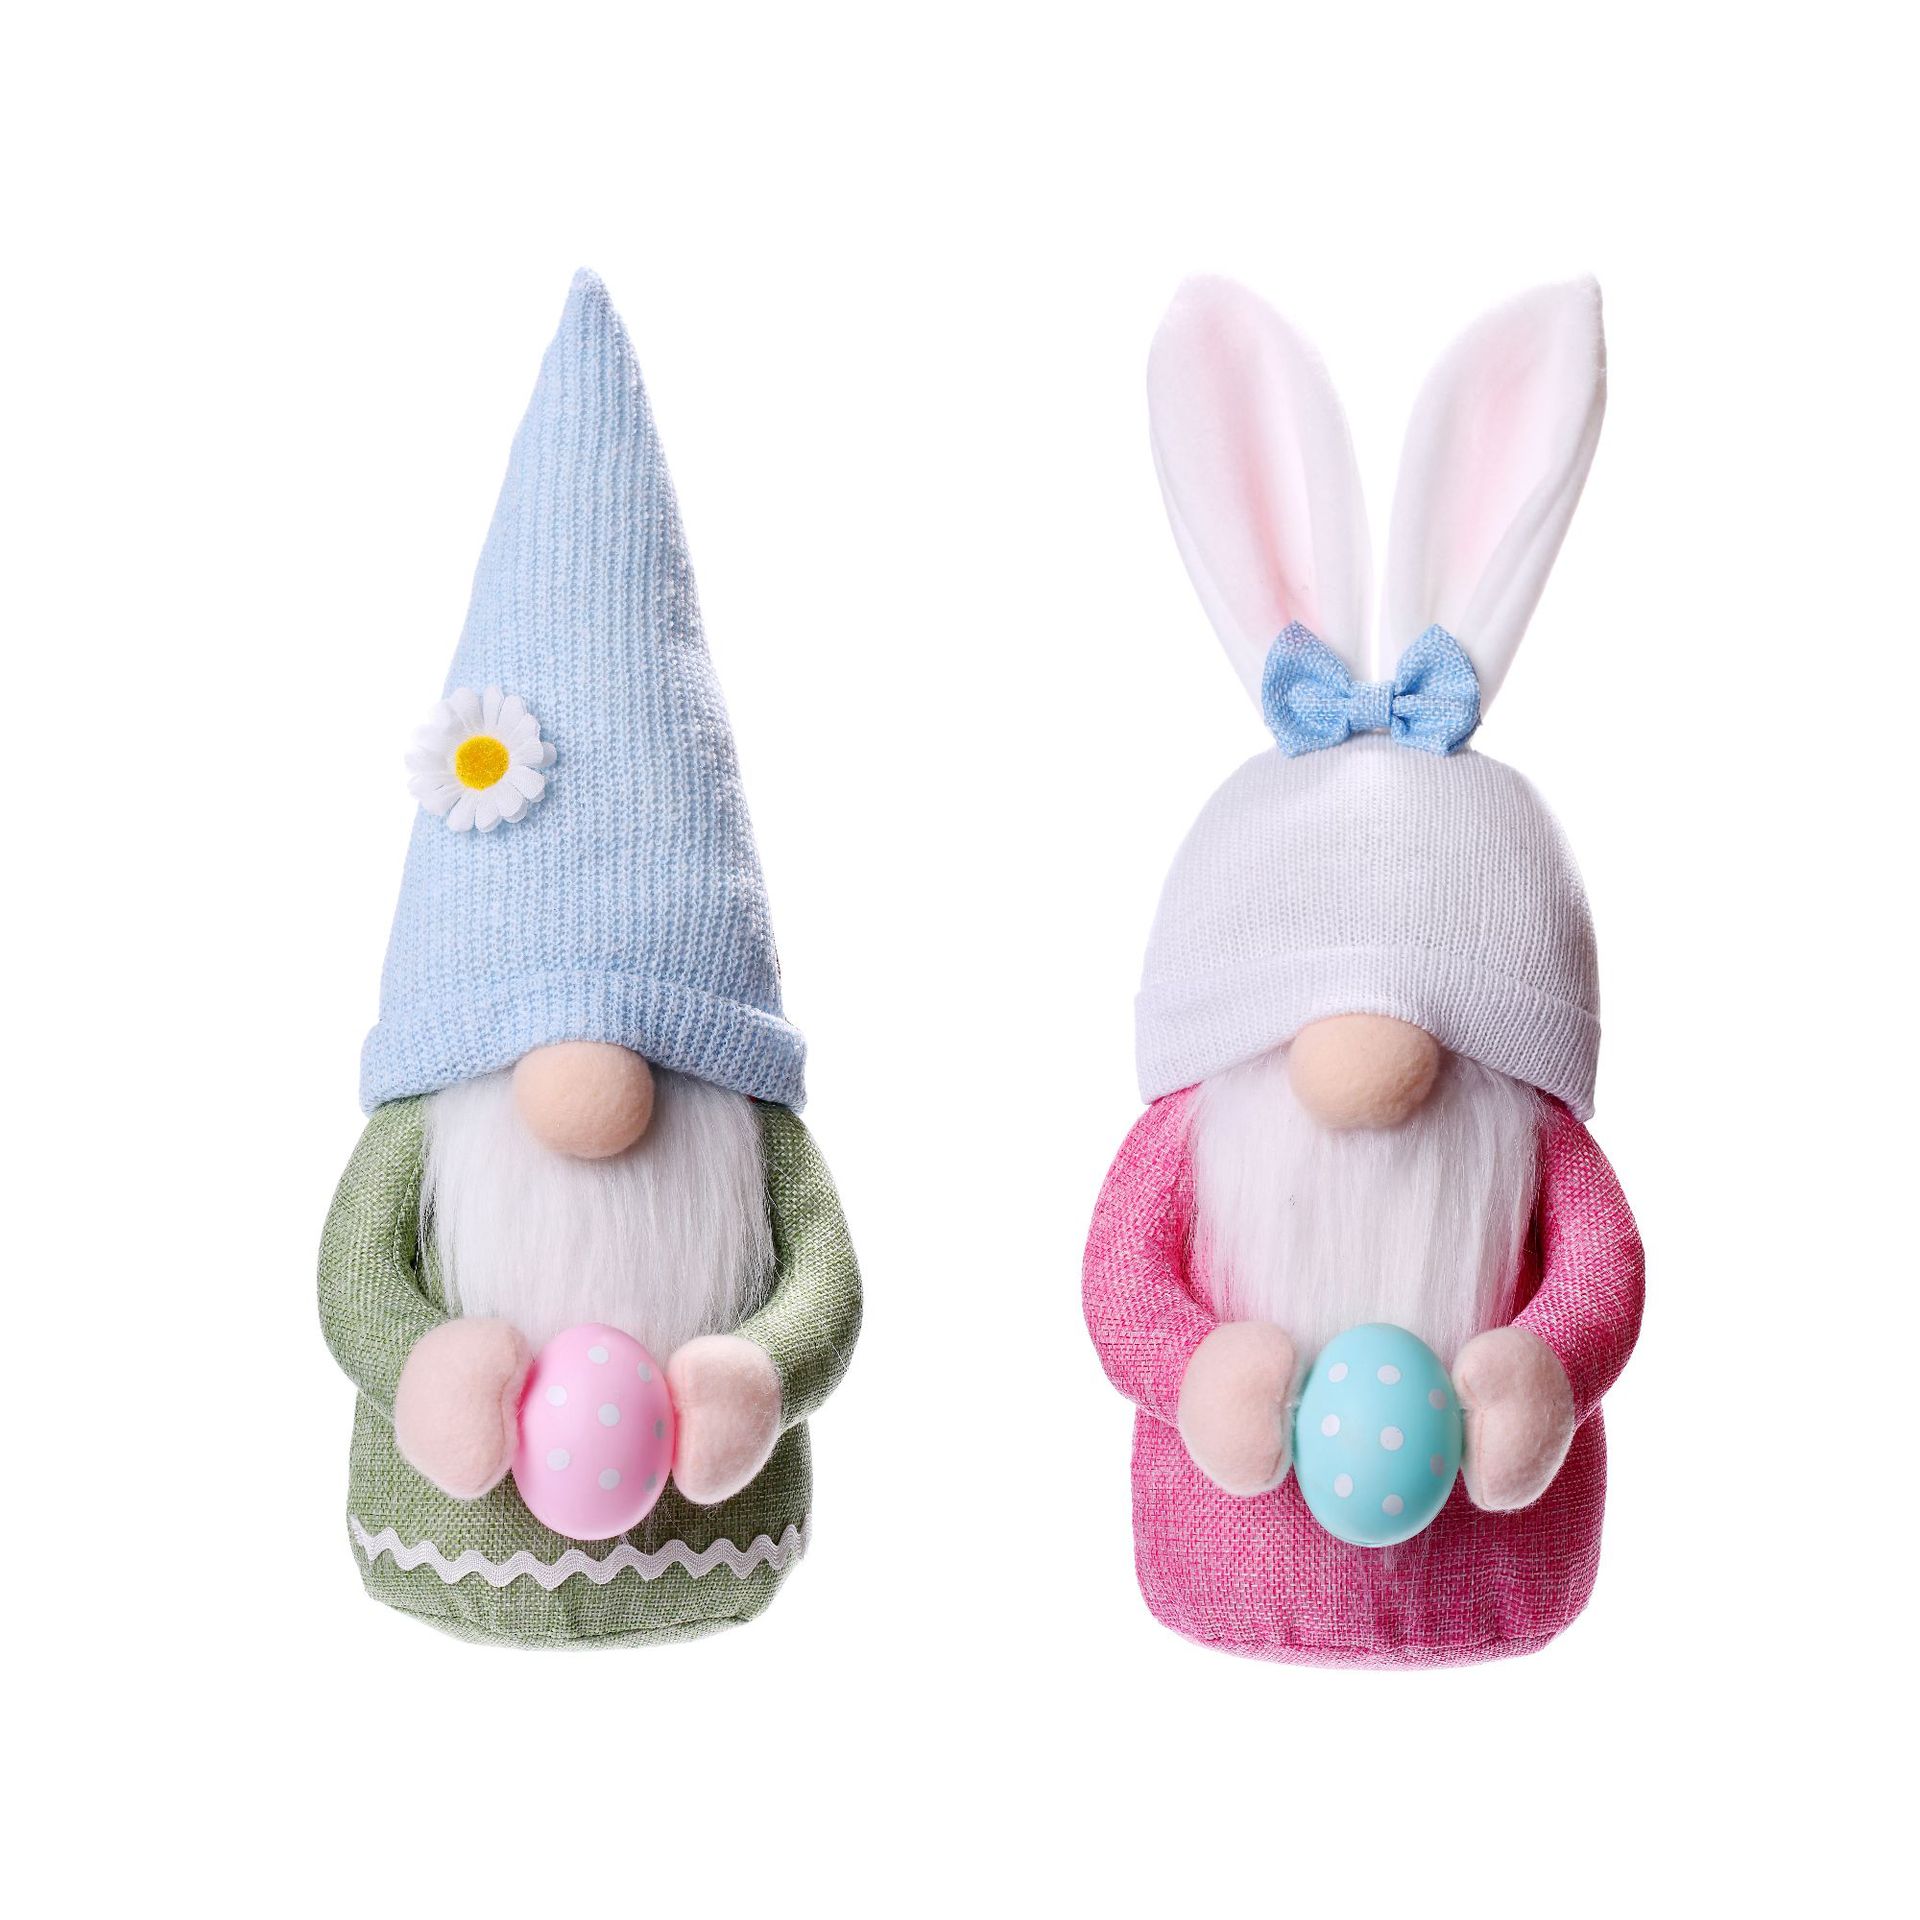 Nouveau Gnome Pâques sans visage poupée décoration de Pâques oreilles de lapin poupée printemps Gnome sans visage poupée avec oeuf Rudolph poupée décoration en gros